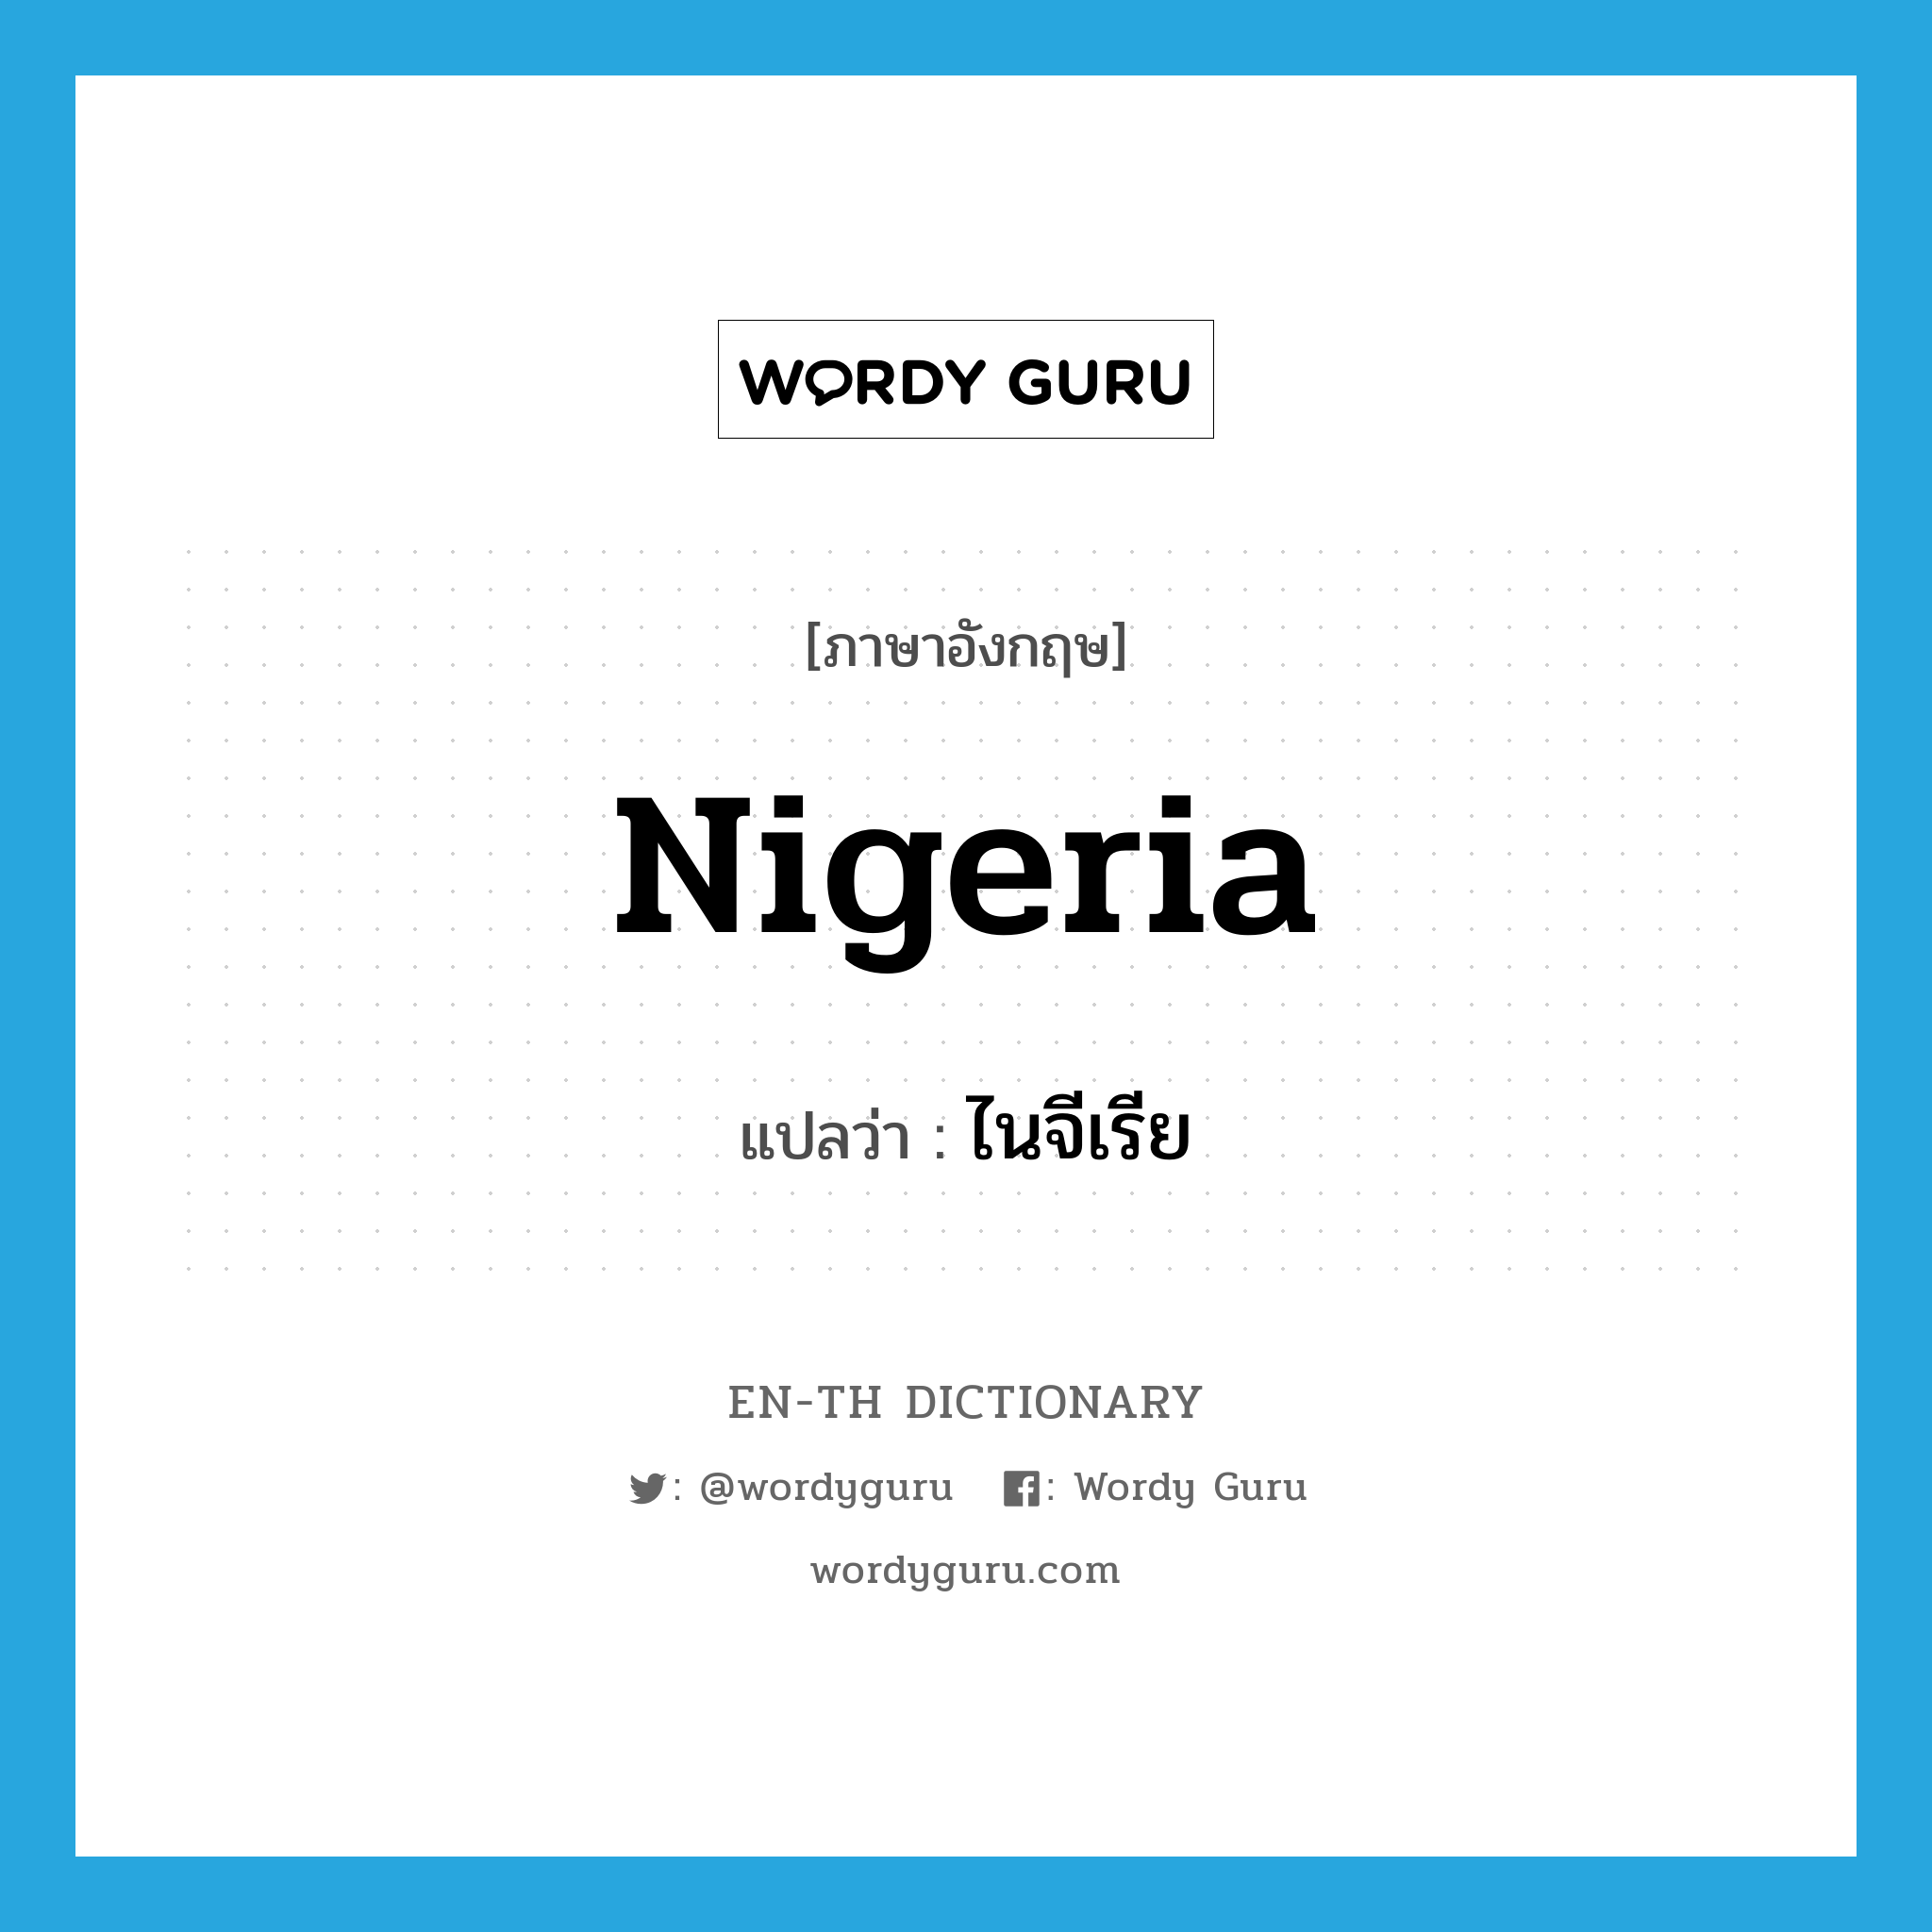 ไนจีเรีย ภาษาอังกฤษ?, คำศัพท์ภาษาอังกฤษ ไนจีเรีย แปลว่า Nigeria ประเภท N หมวด N